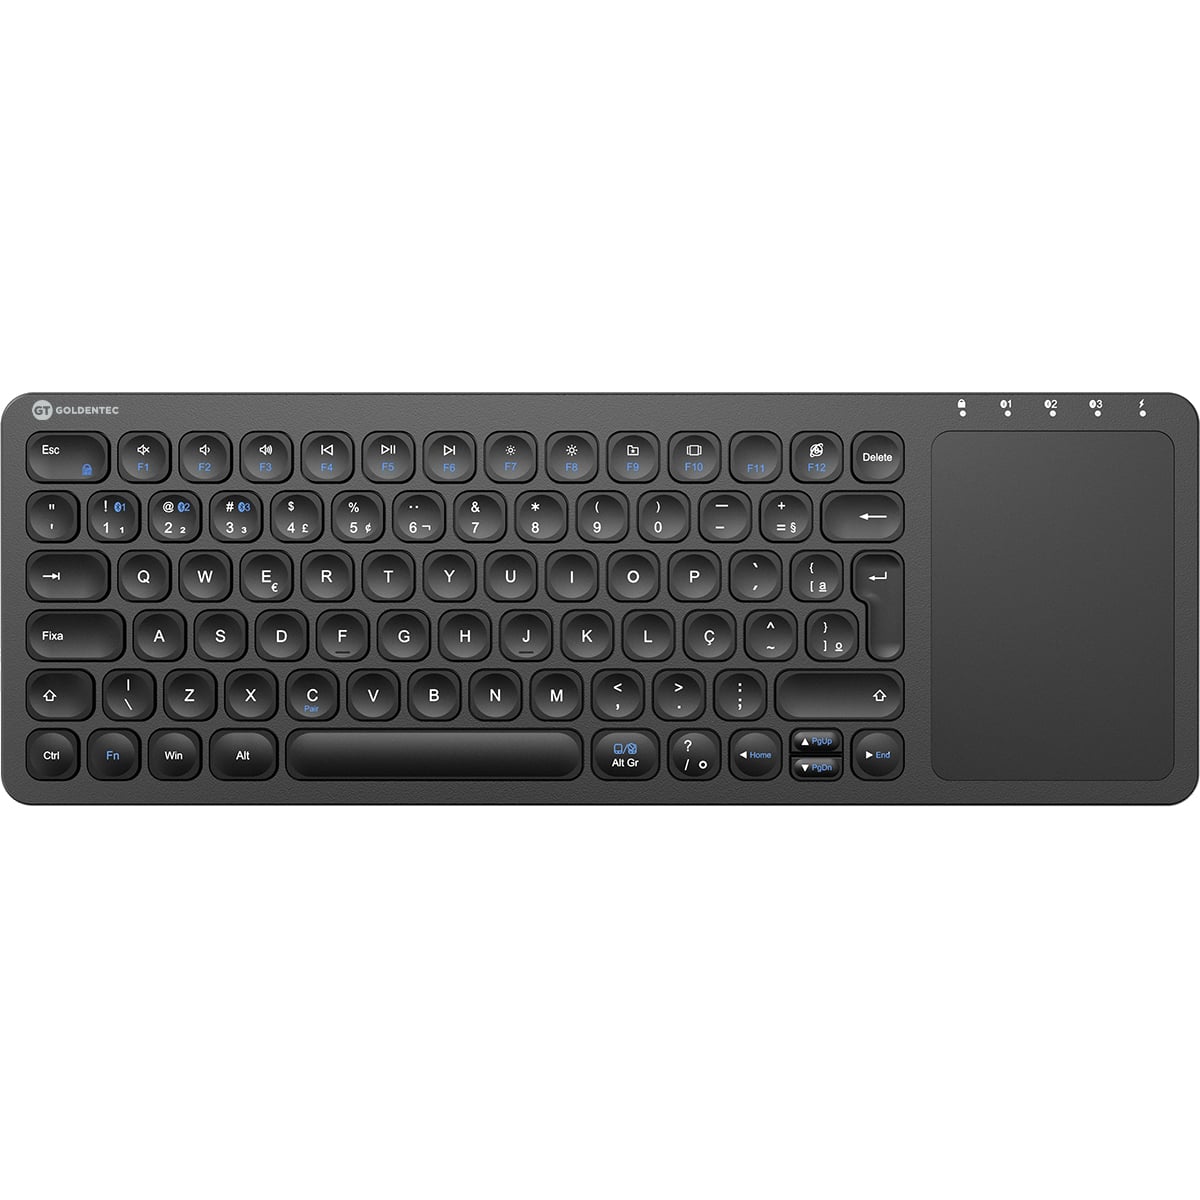 Um teclado preto com o número 1 nele